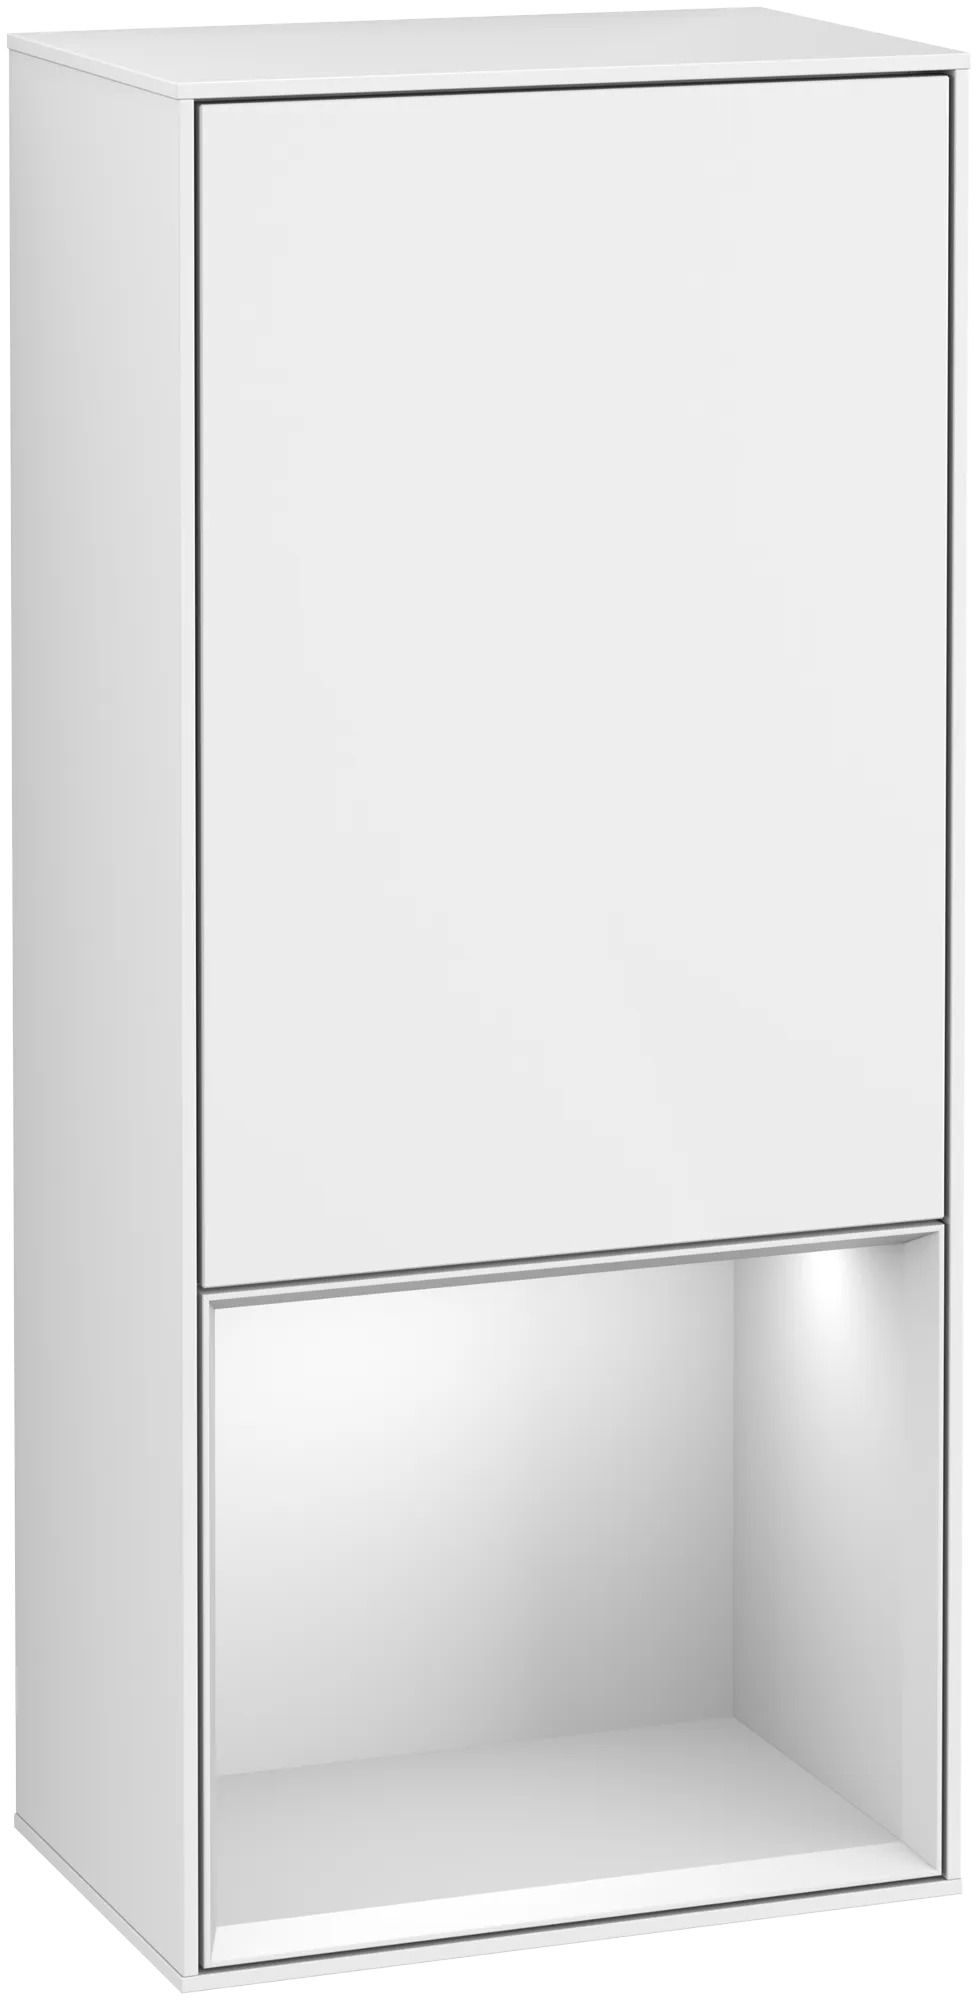 Bild von VILLEROY BOCH Finion Seitenschrank, mit Beleuchtung, 1 Tür, 418 x 936 x 270 mm, Glossy White Lacquer / White Matt Lacquer #G550MTGF